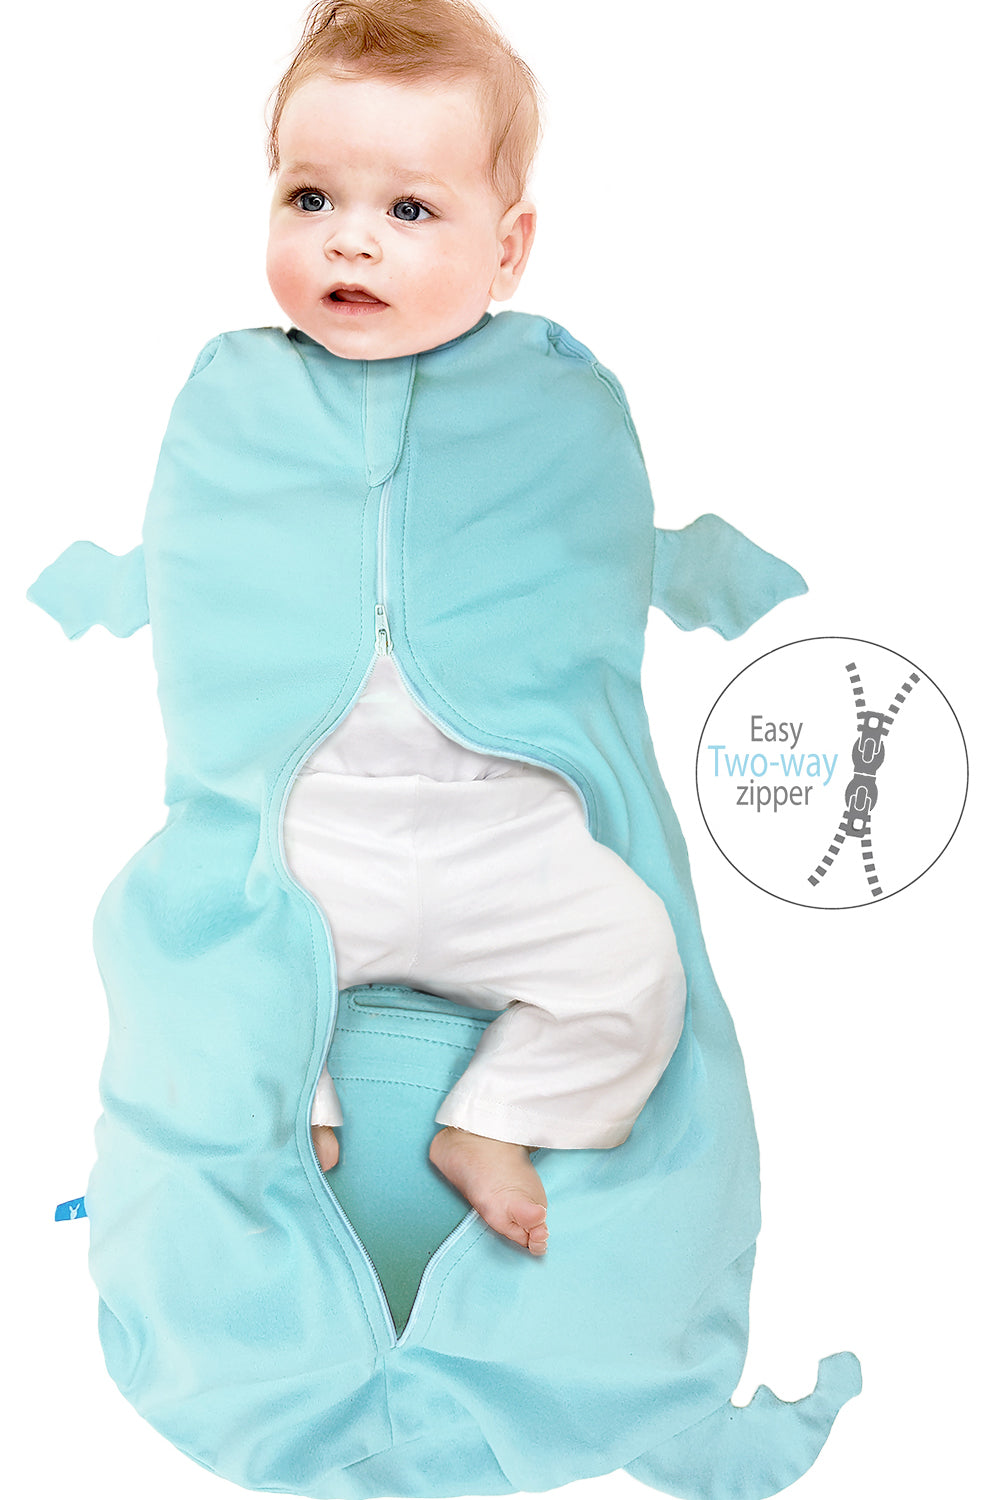 3 3 Mon. Maße S: 0 Wallaboo Baby Schlafsack Super für Babys die oft wach werden Der idealer erster Pücksack für Ihre Kleinen 100% Baumwolle 6 kg Farbe: Taupe Passend auch für alle Babyschale 